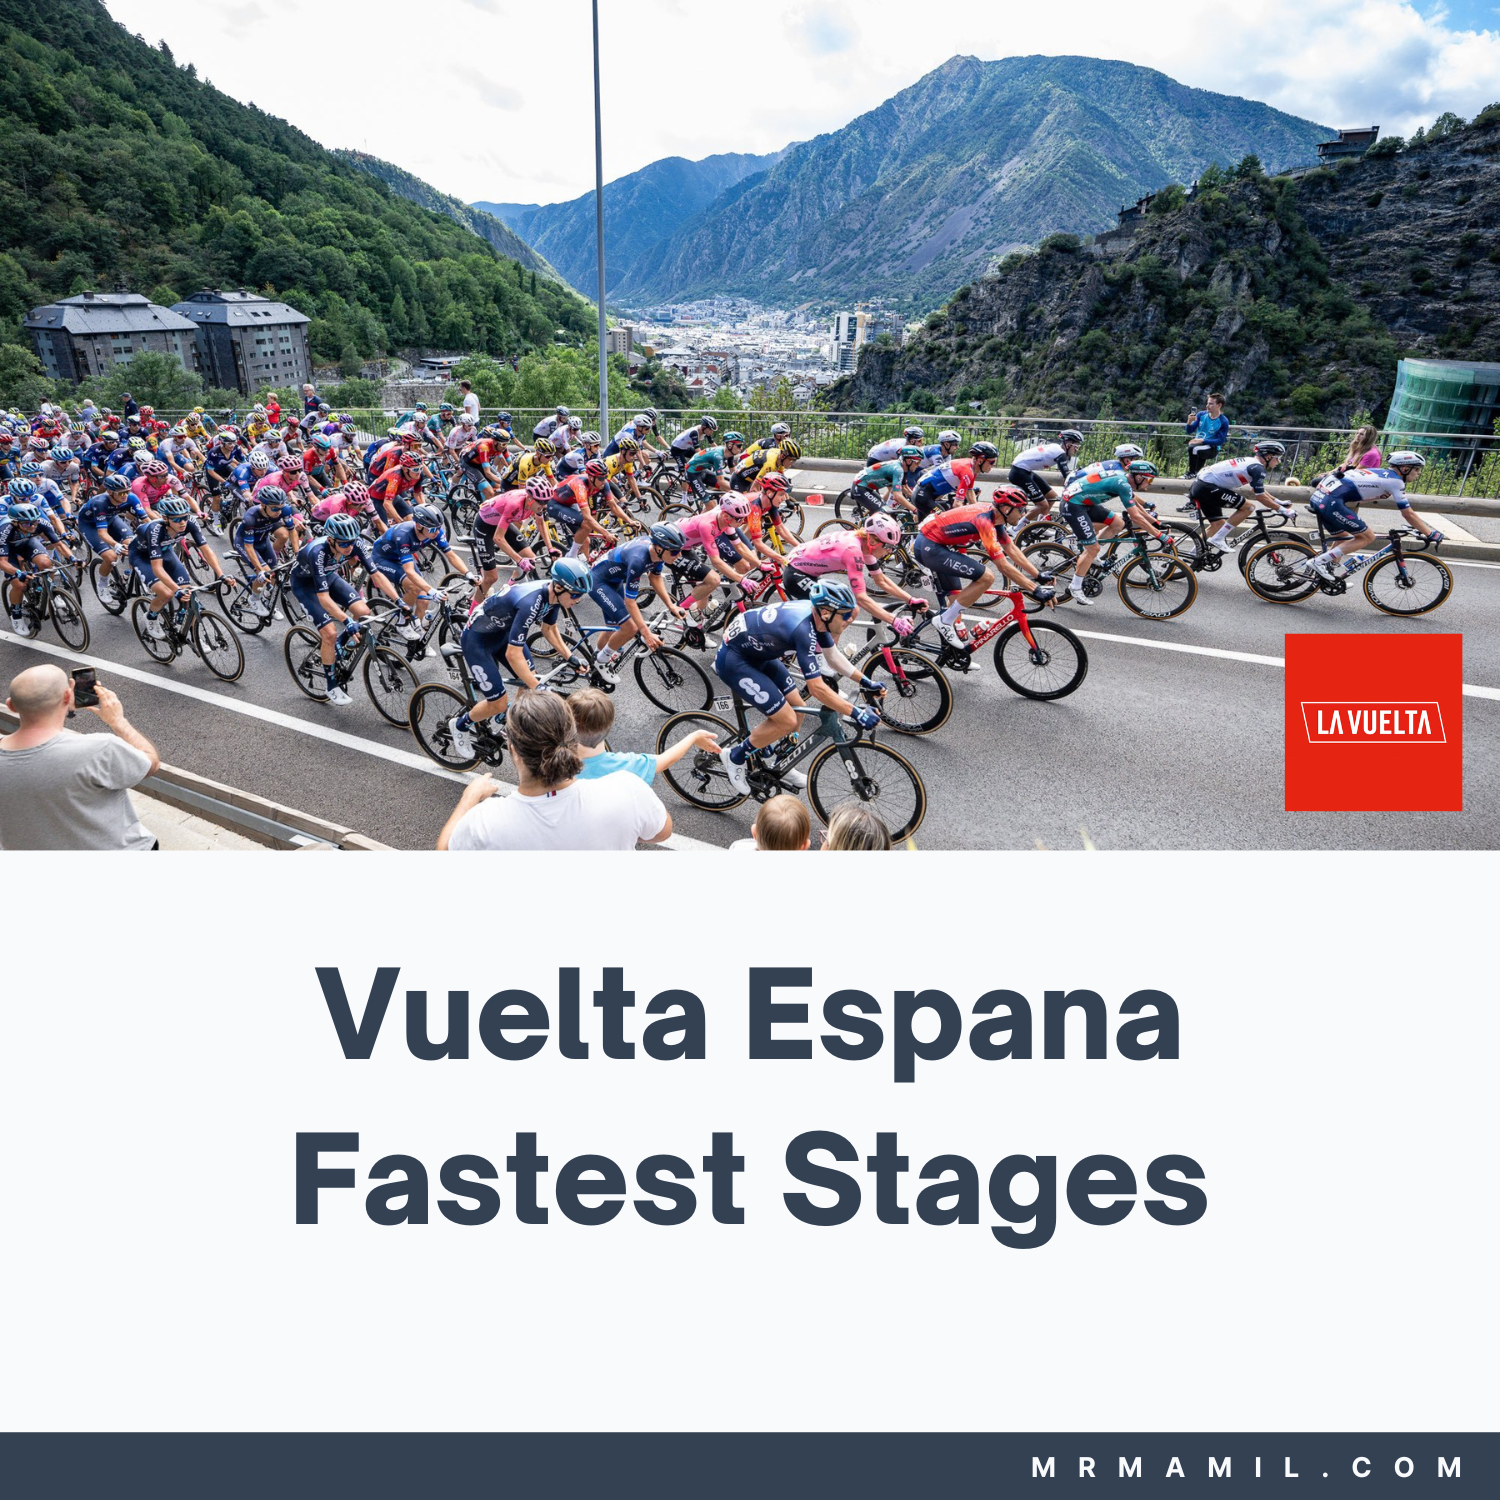 Vuelta Espana Fastest Stages